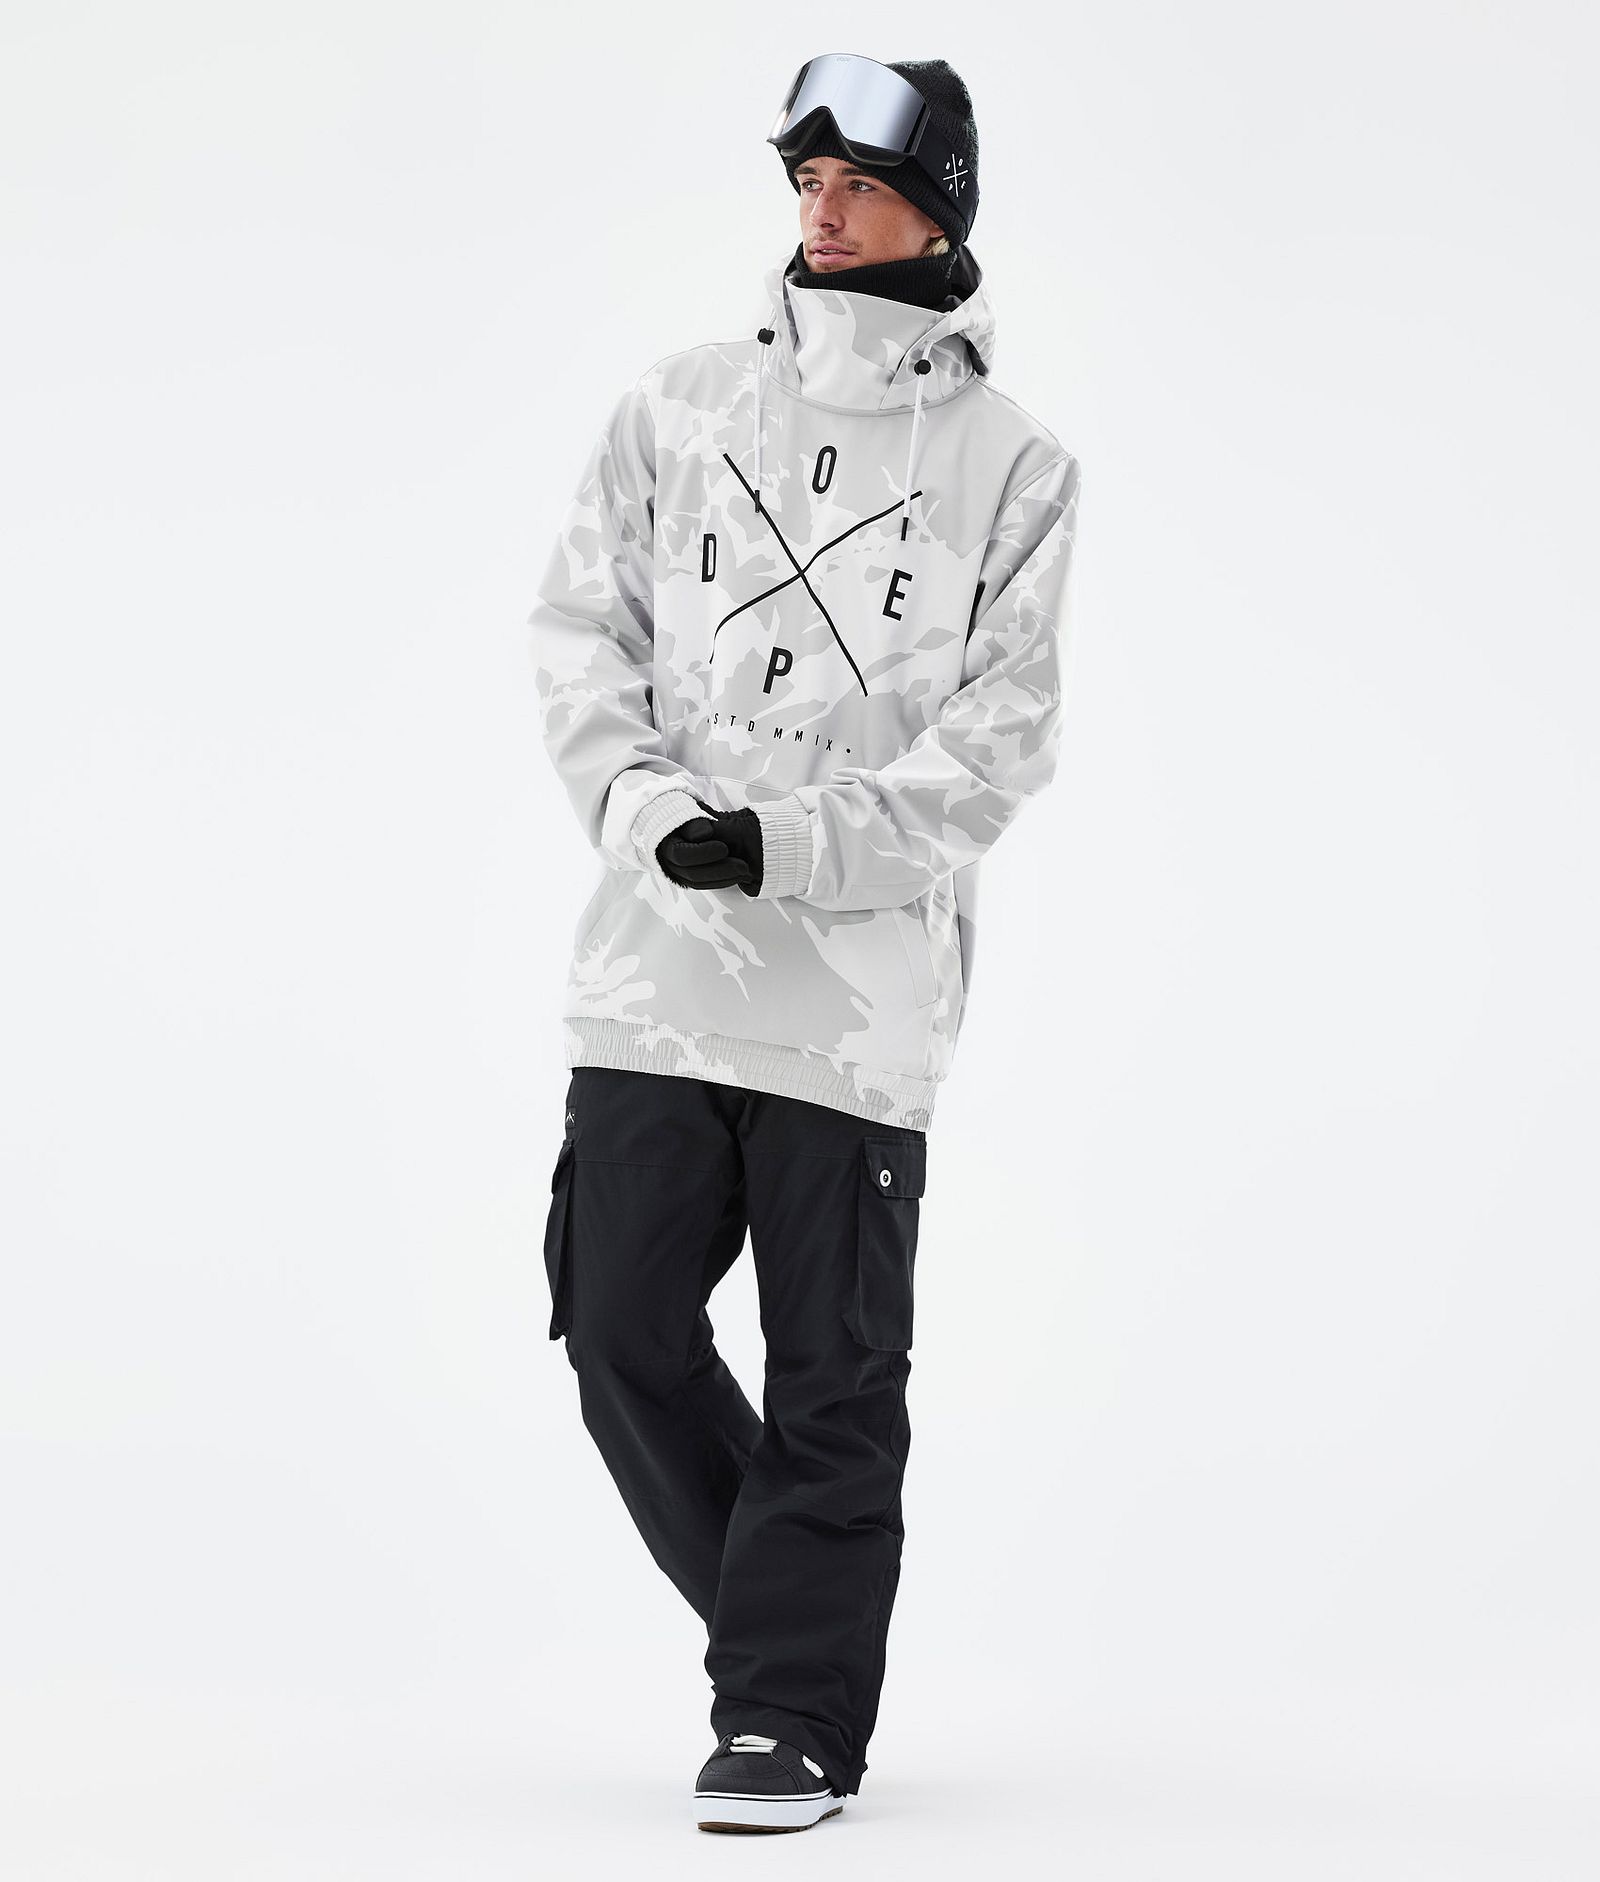 Yeti Giacca Snowboard Uomo 2X-Up Grey Camo